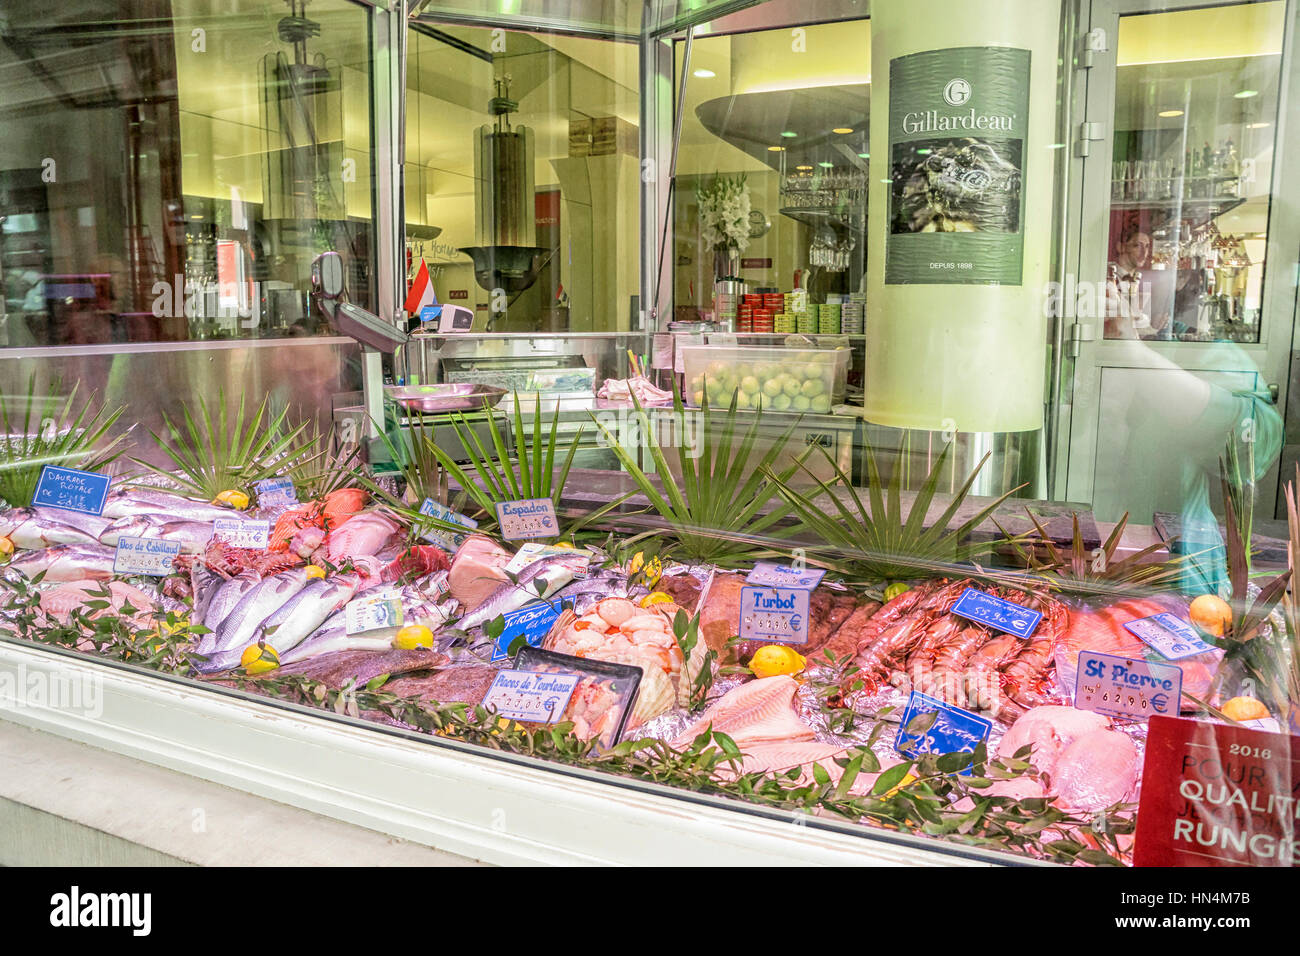 Luxemburg, Luxemburg - JUNE19, 2016: Schaufenster mit Meeresfrüchten im Zentrum von Luxemburg Stockfoto